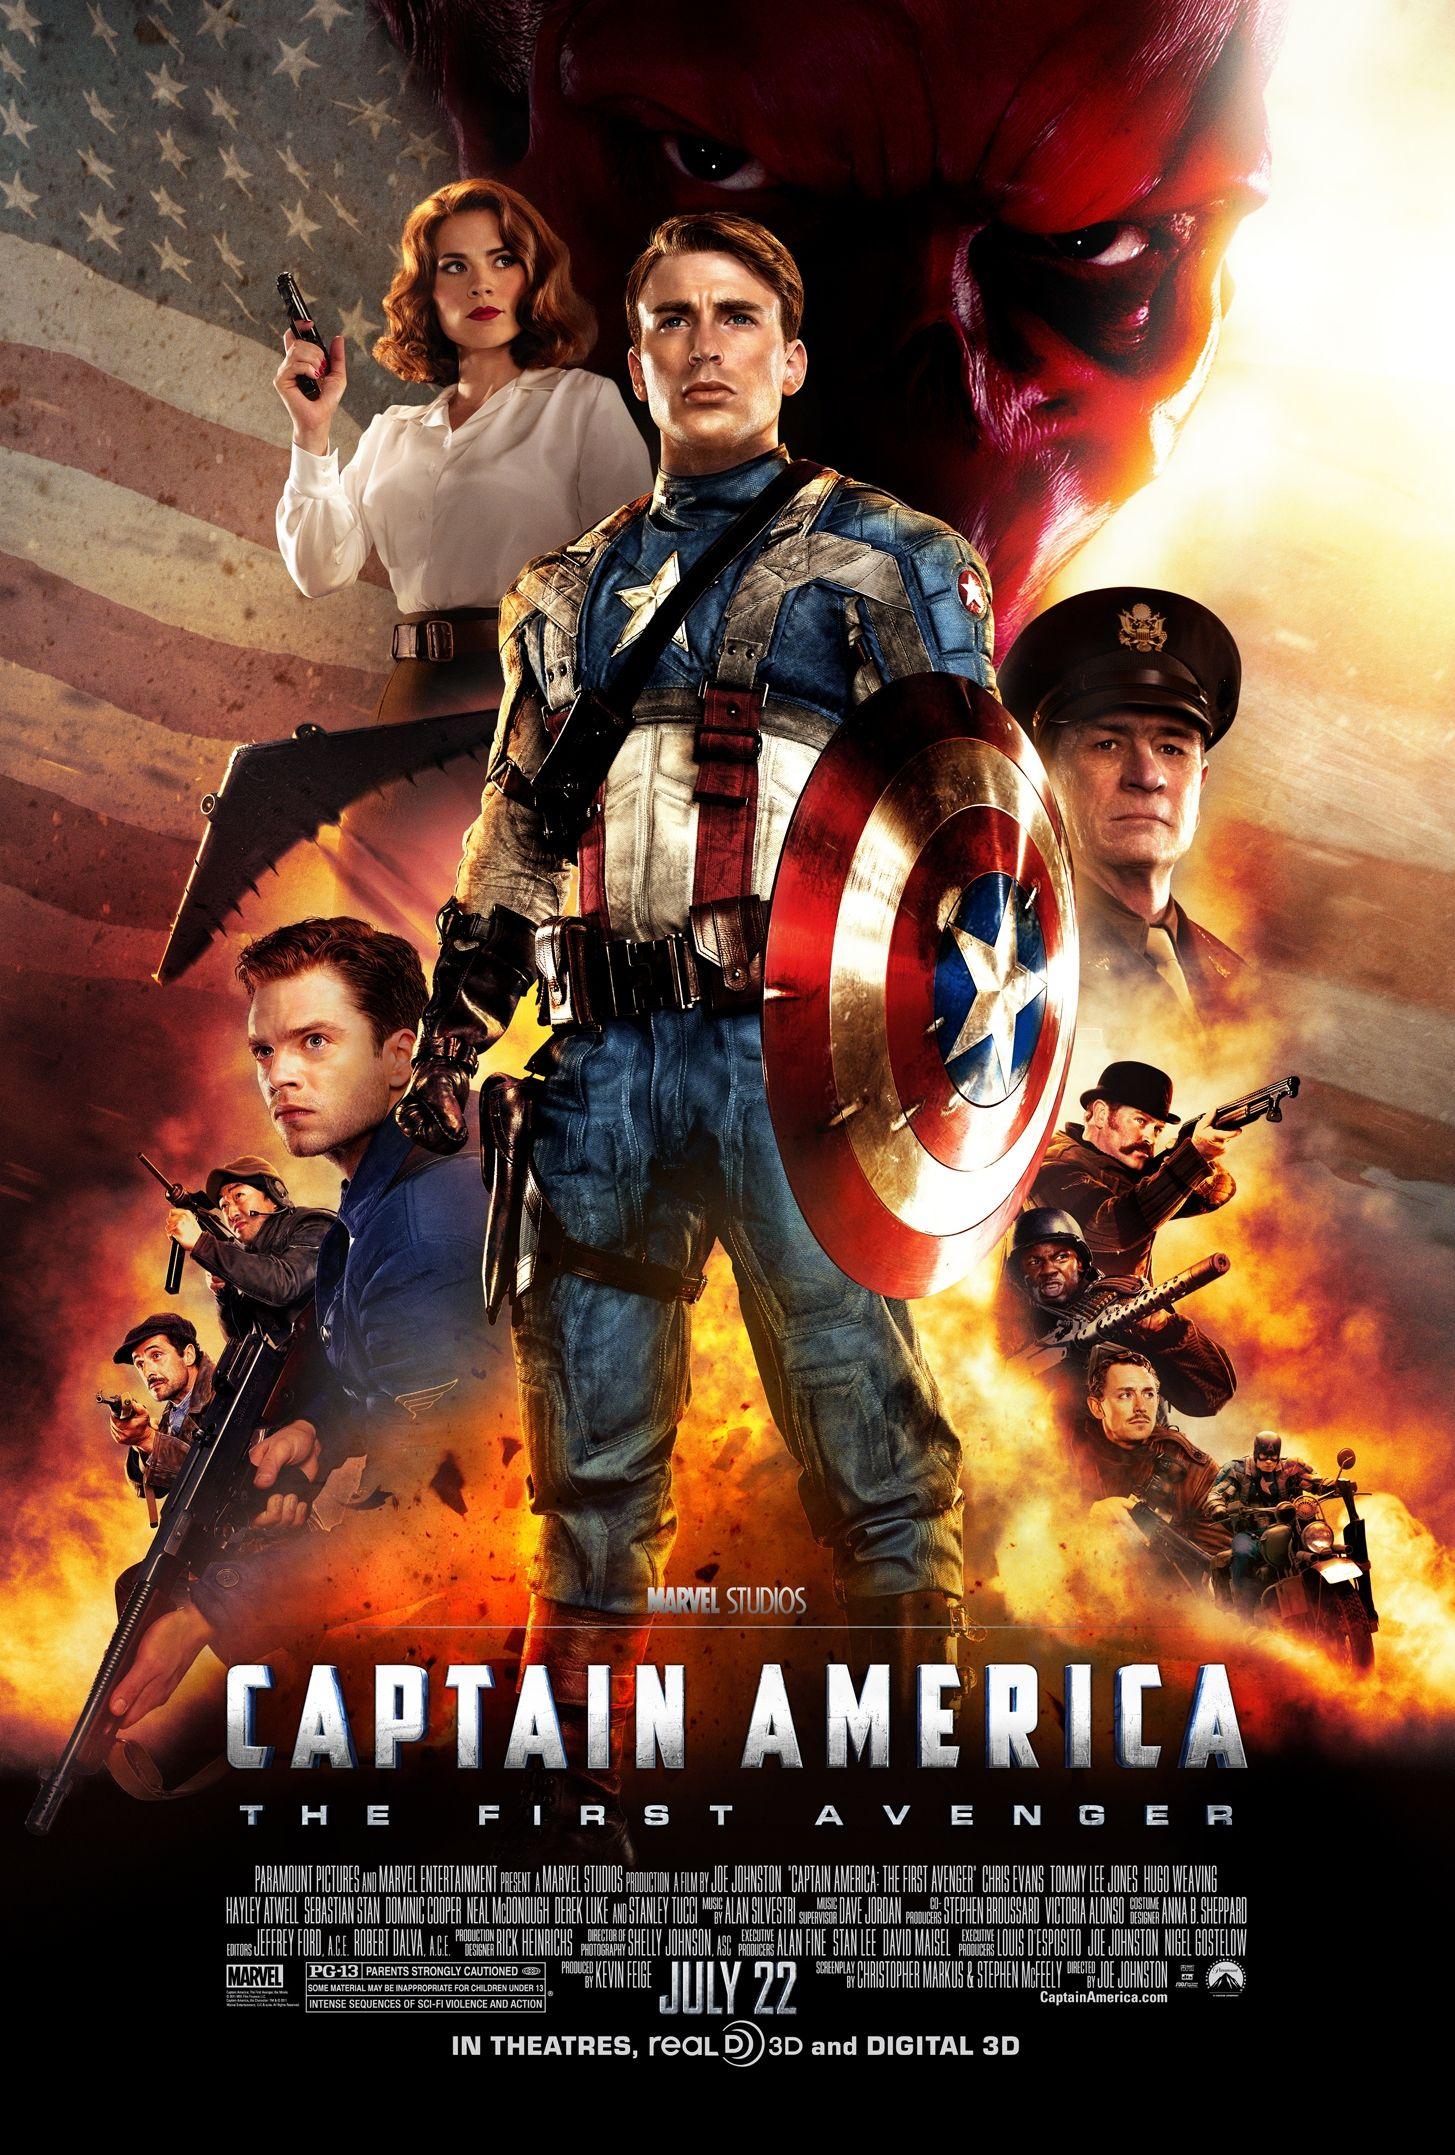 1455x2155px Captain America First Avenger 2361.48 KB